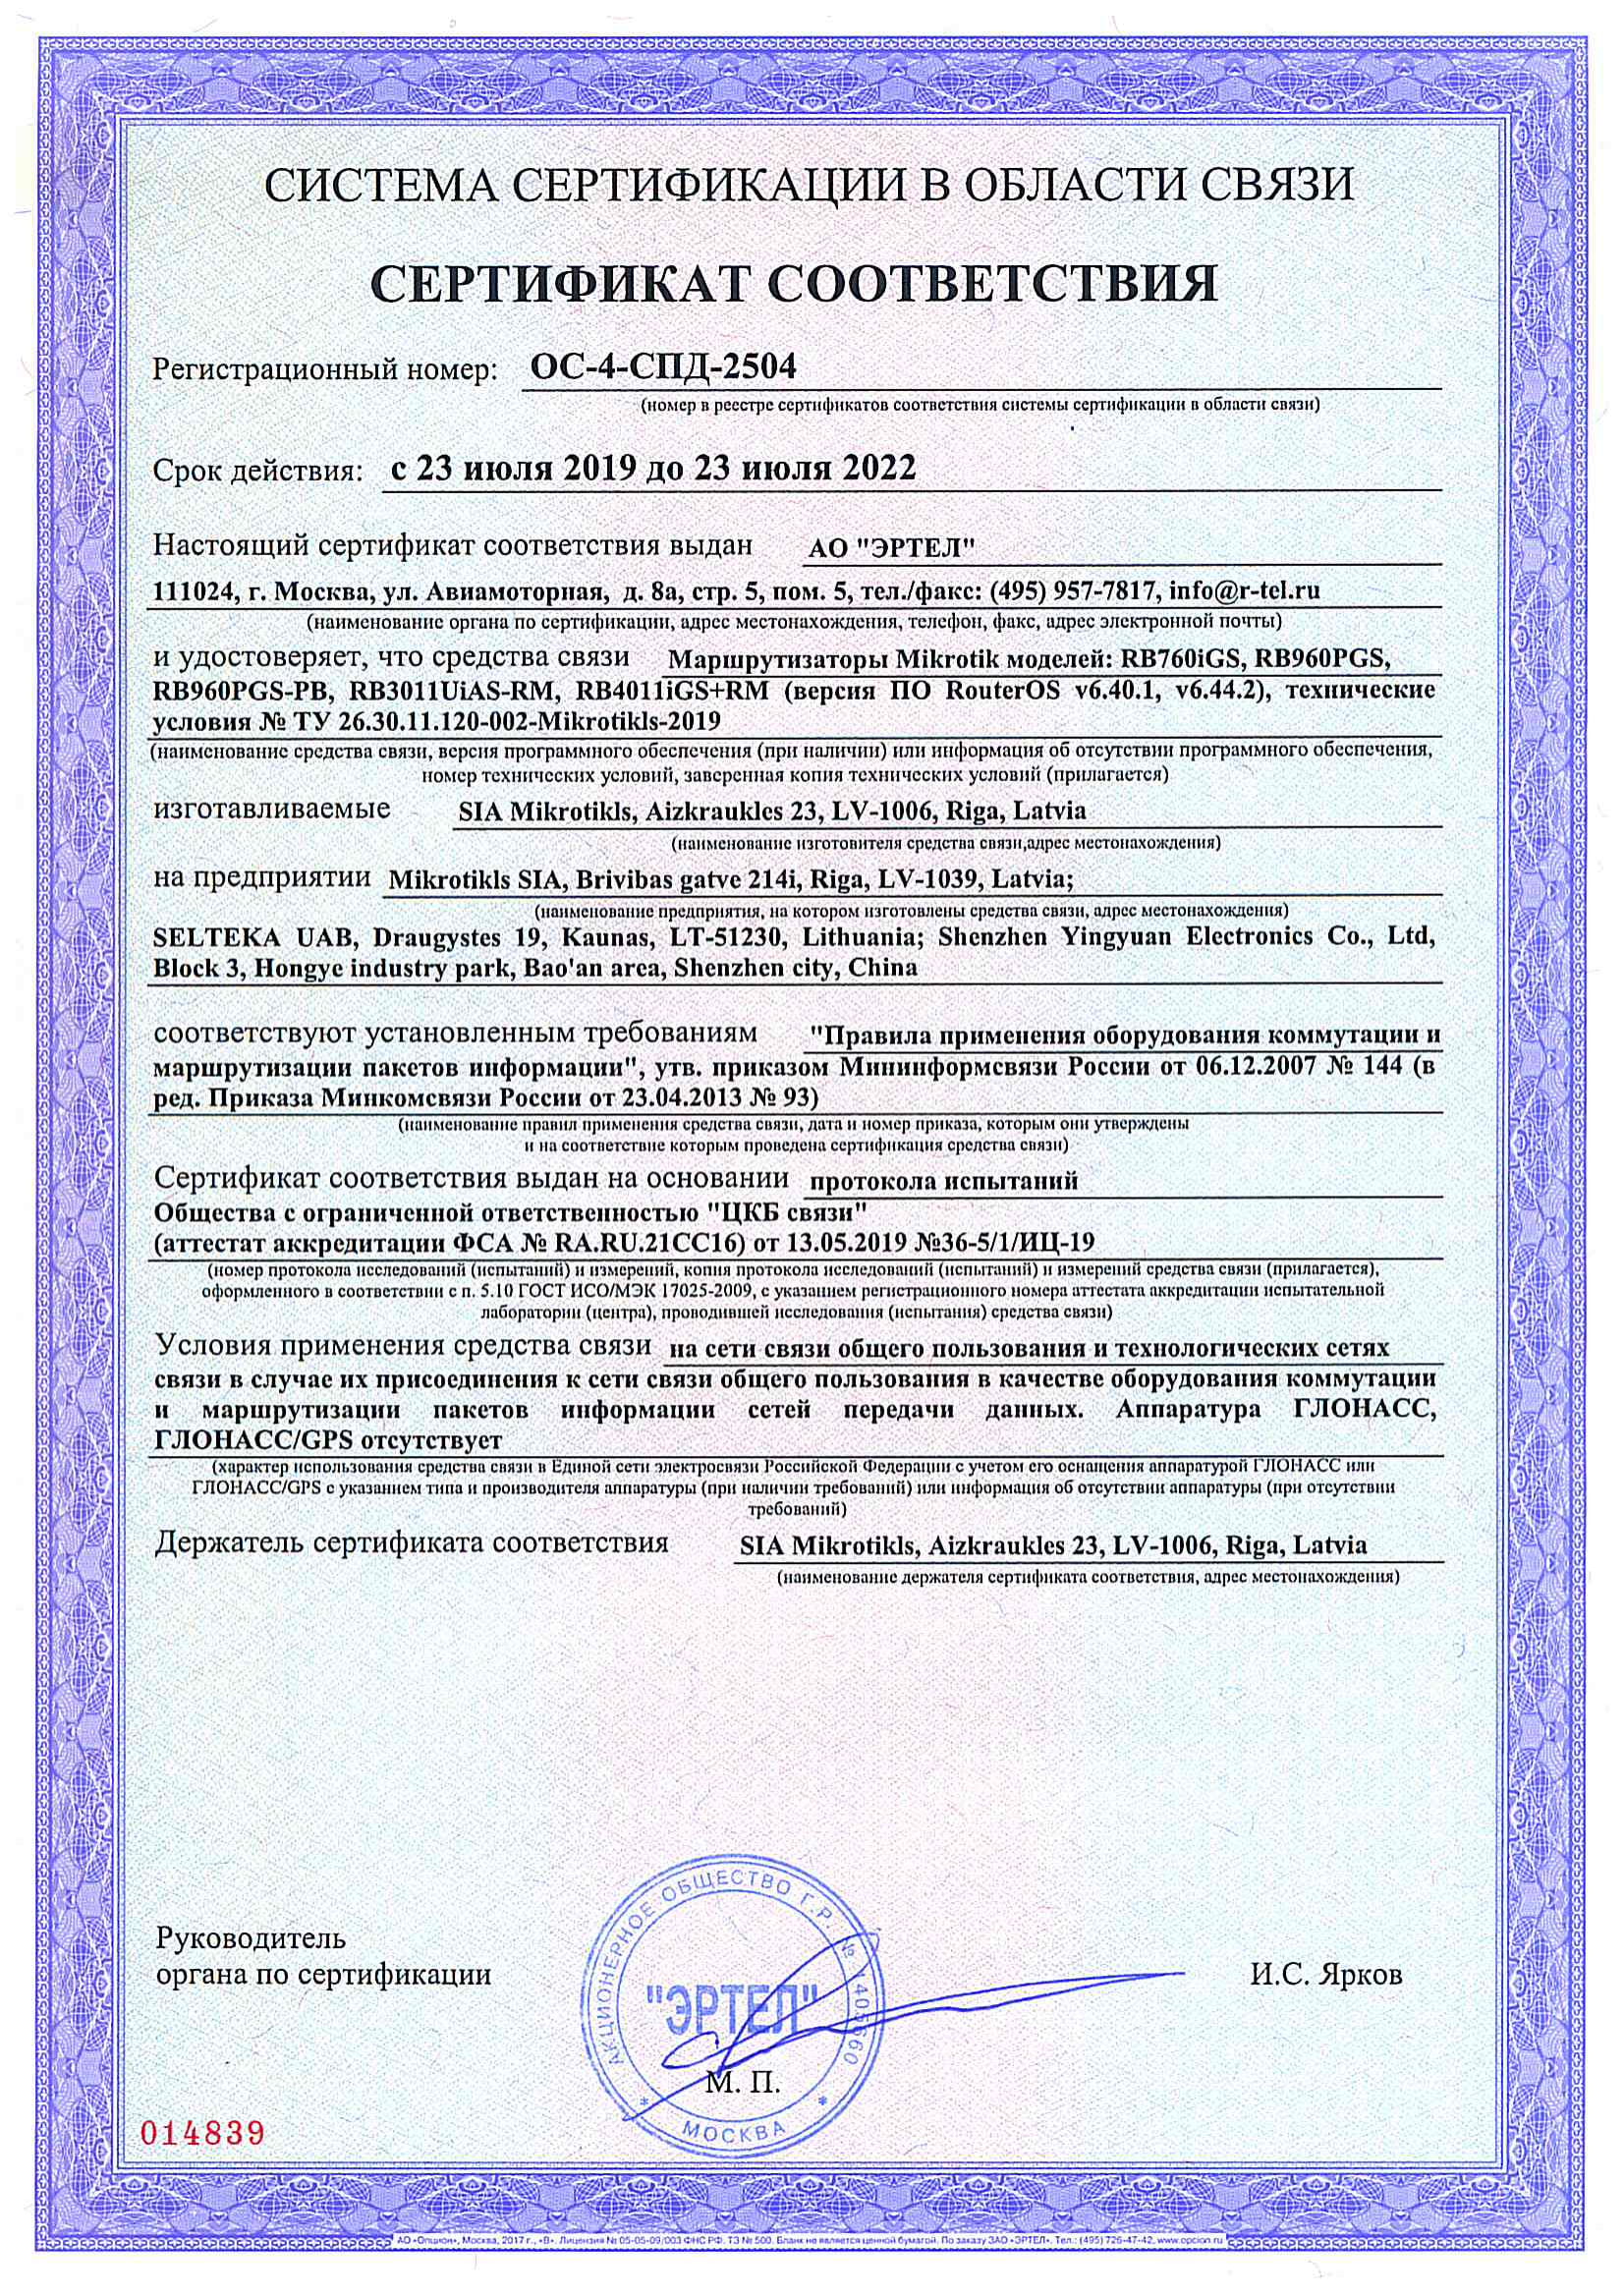 Сертификат соответствия в области связи ОС-4-СПД-2504